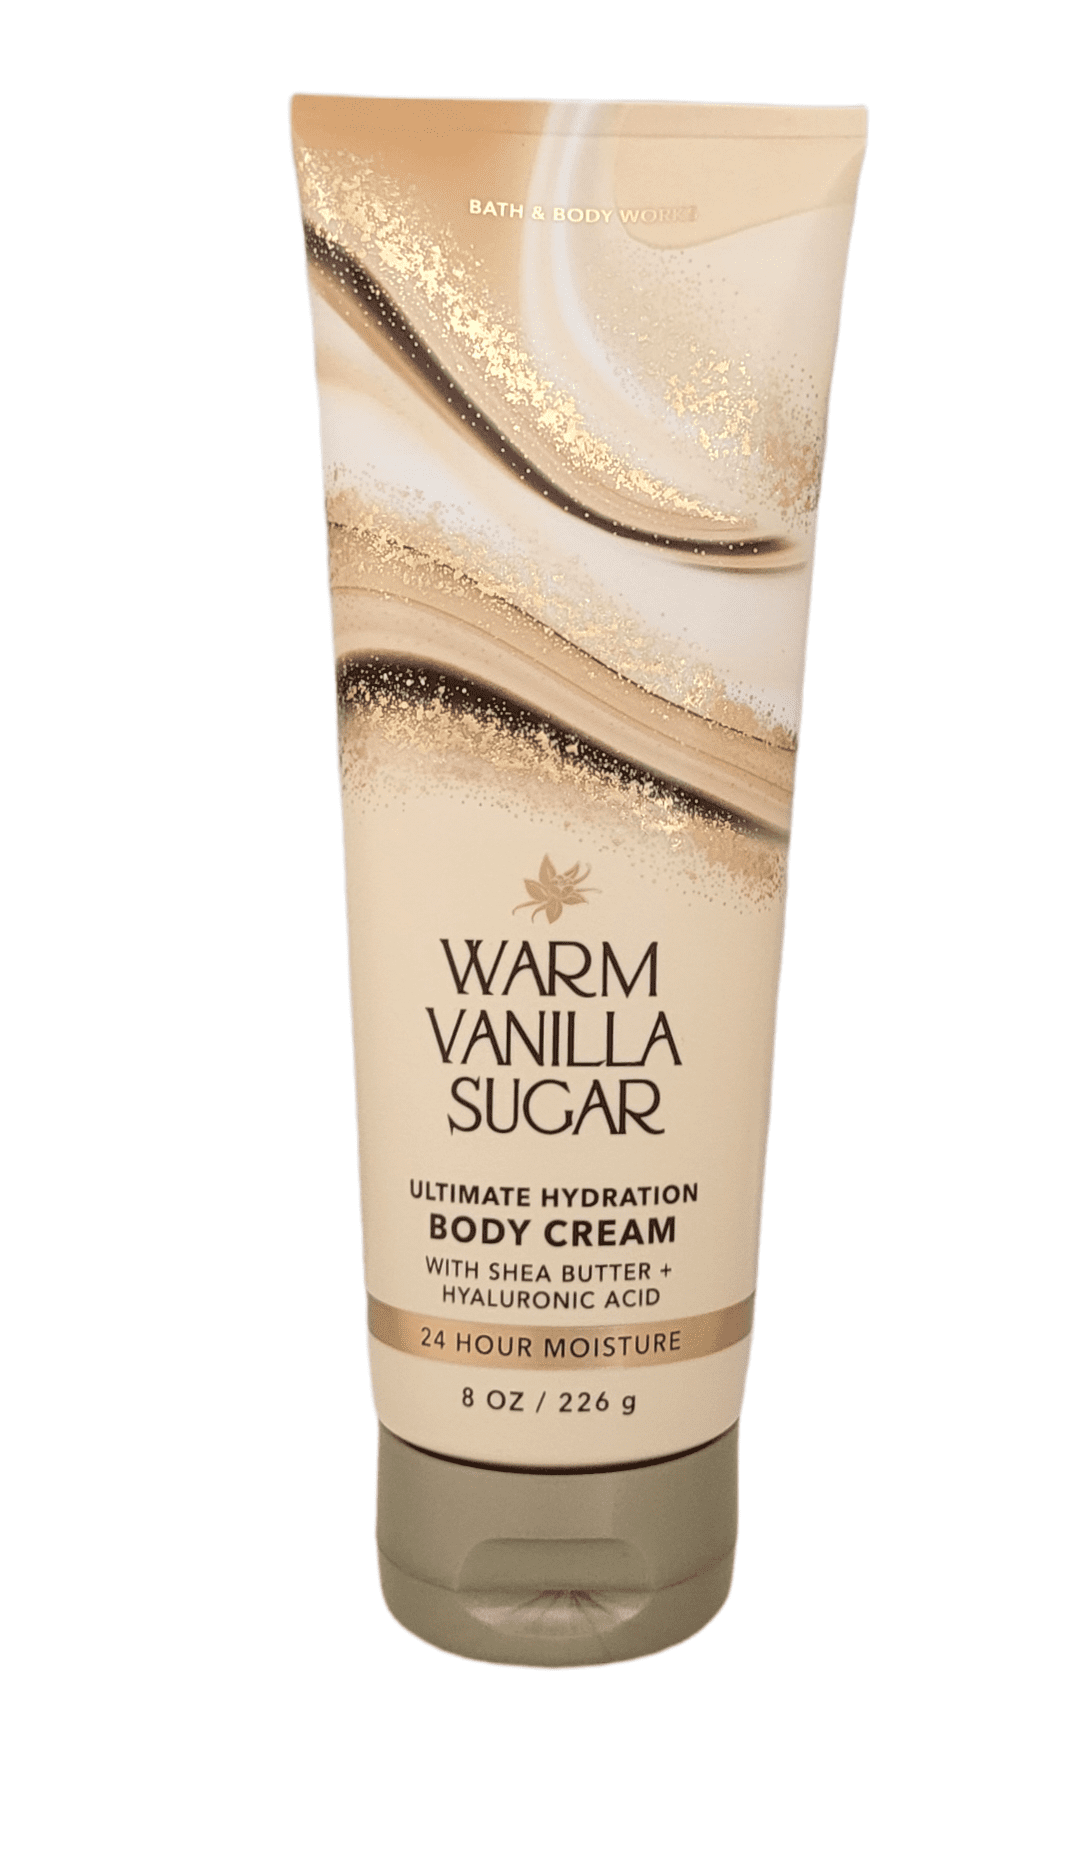 Bath & Body works Warm Vanilla Sugar Ultimate Hydration Body Cream 8 oz